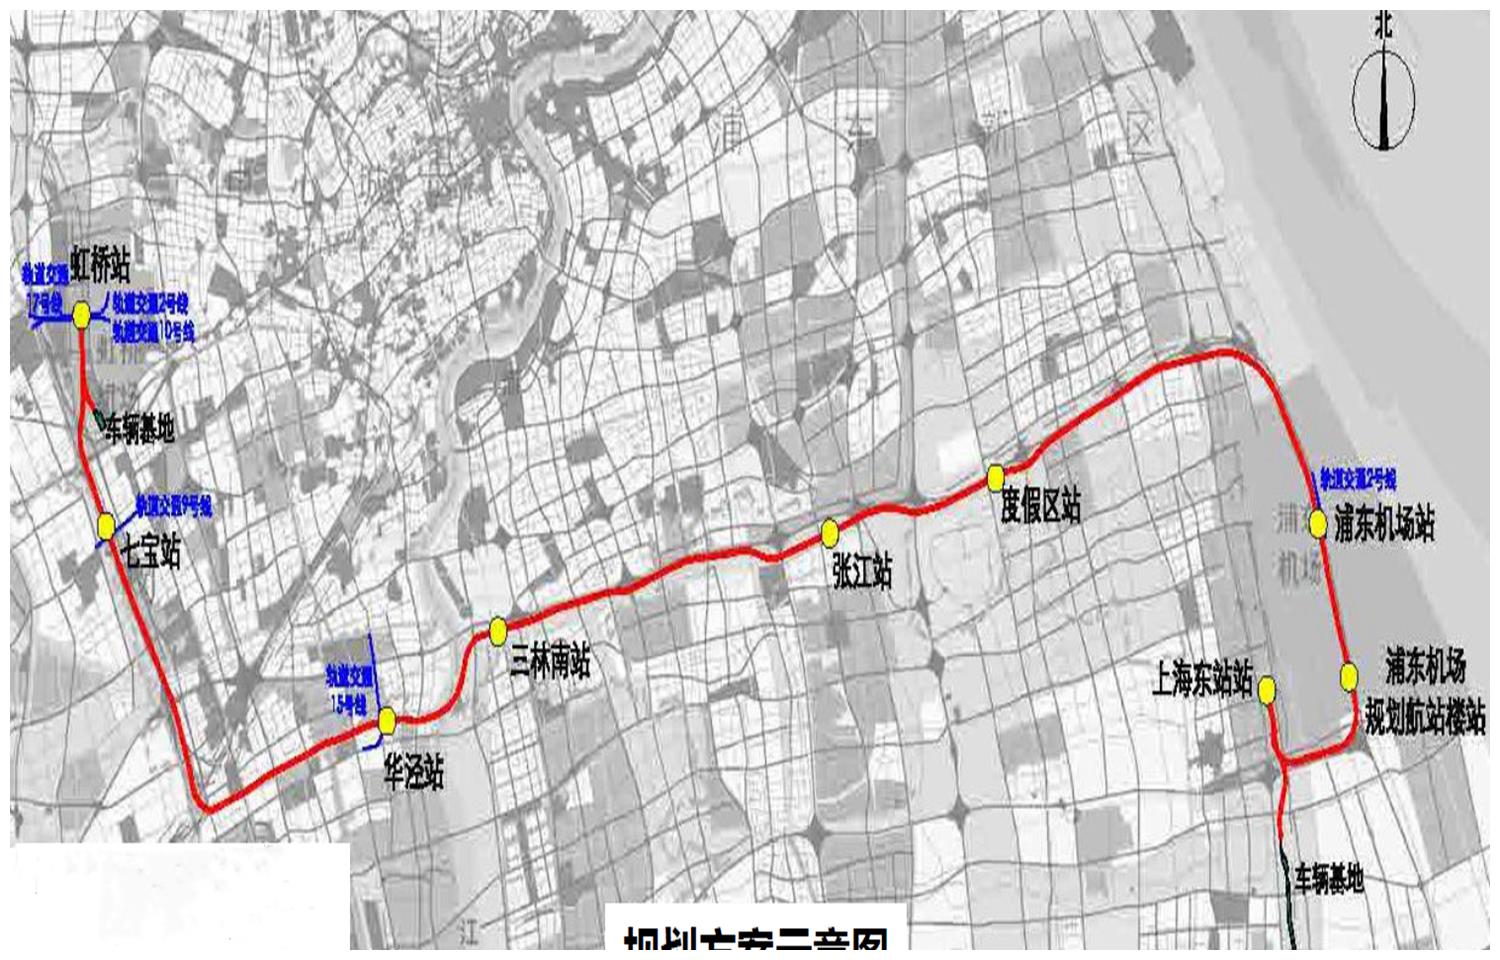 上海27号线线路图高清图片